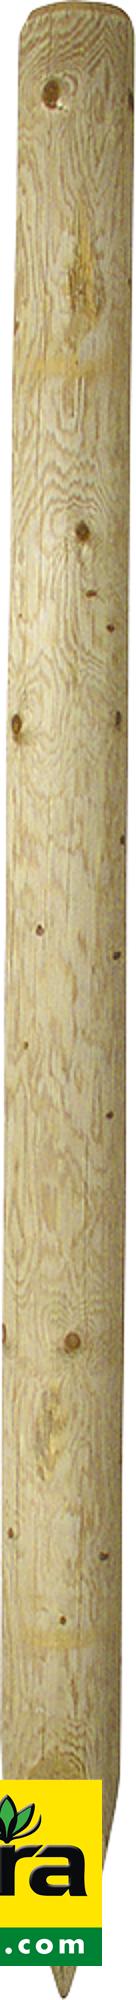 Holzpfosten, 2,75 m, imprägniert, gespitzt, d=16-18 cm